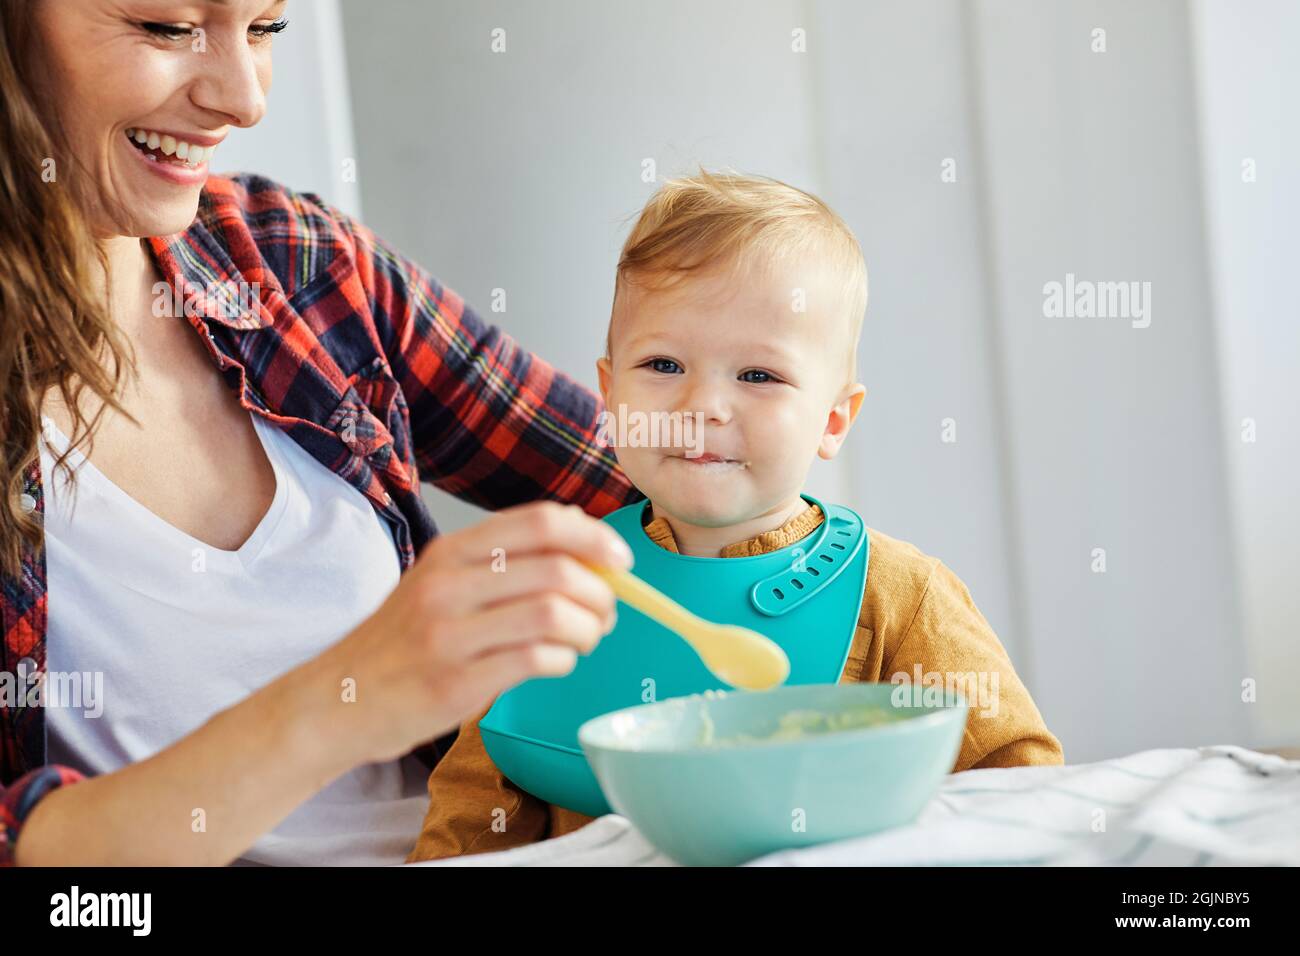 alimentación de la madre comida del bebé niño comiendo cuidado de la familia infancia cuchara linda Foto de stock